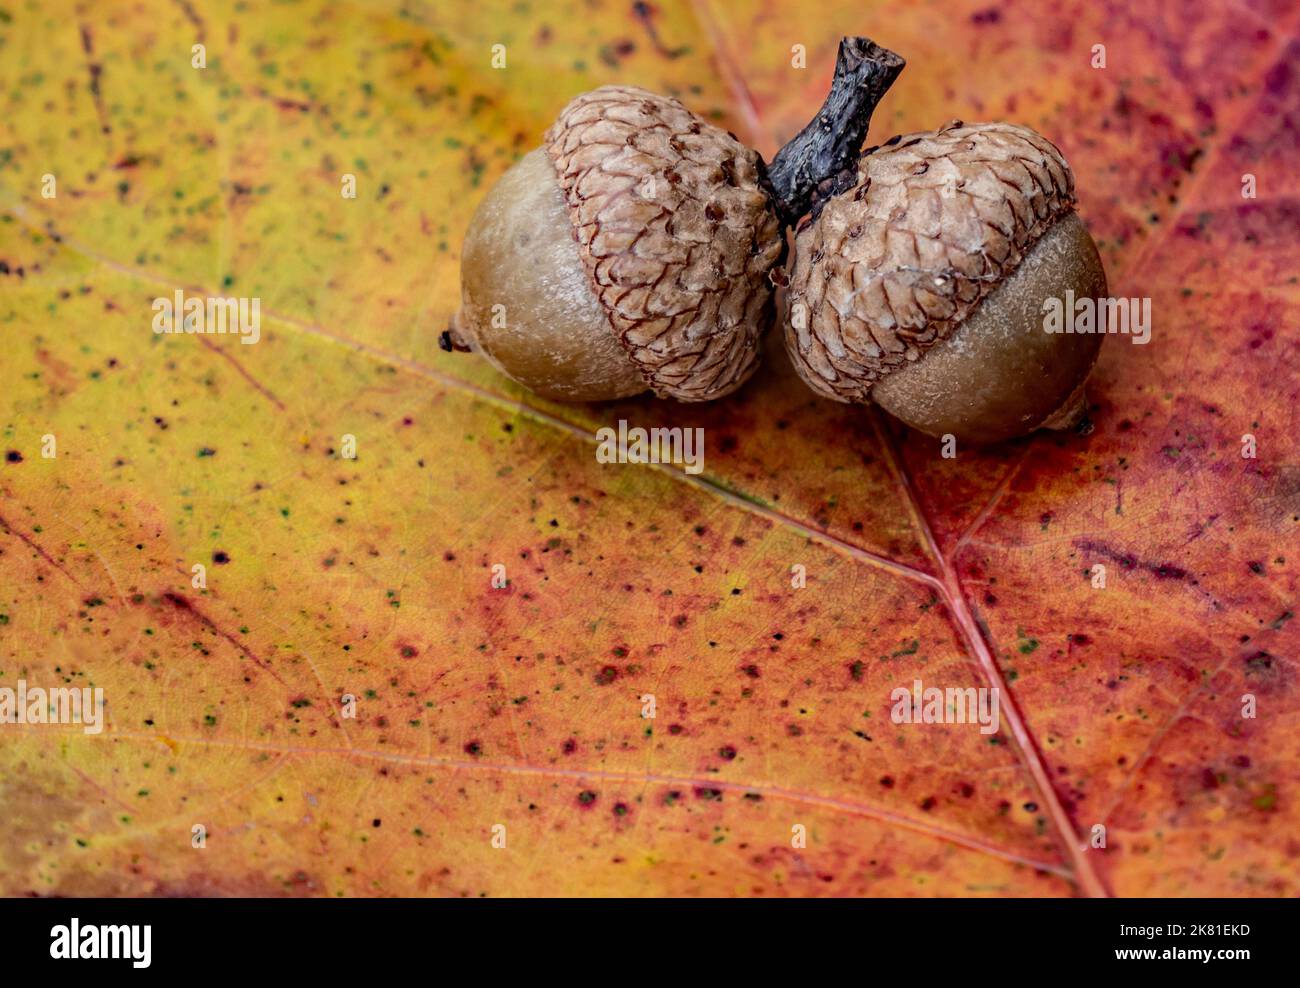 Gros plan de deux glands sur une feuille de chêne d'automne colorée par temps froid en octobre. Banque D'Images